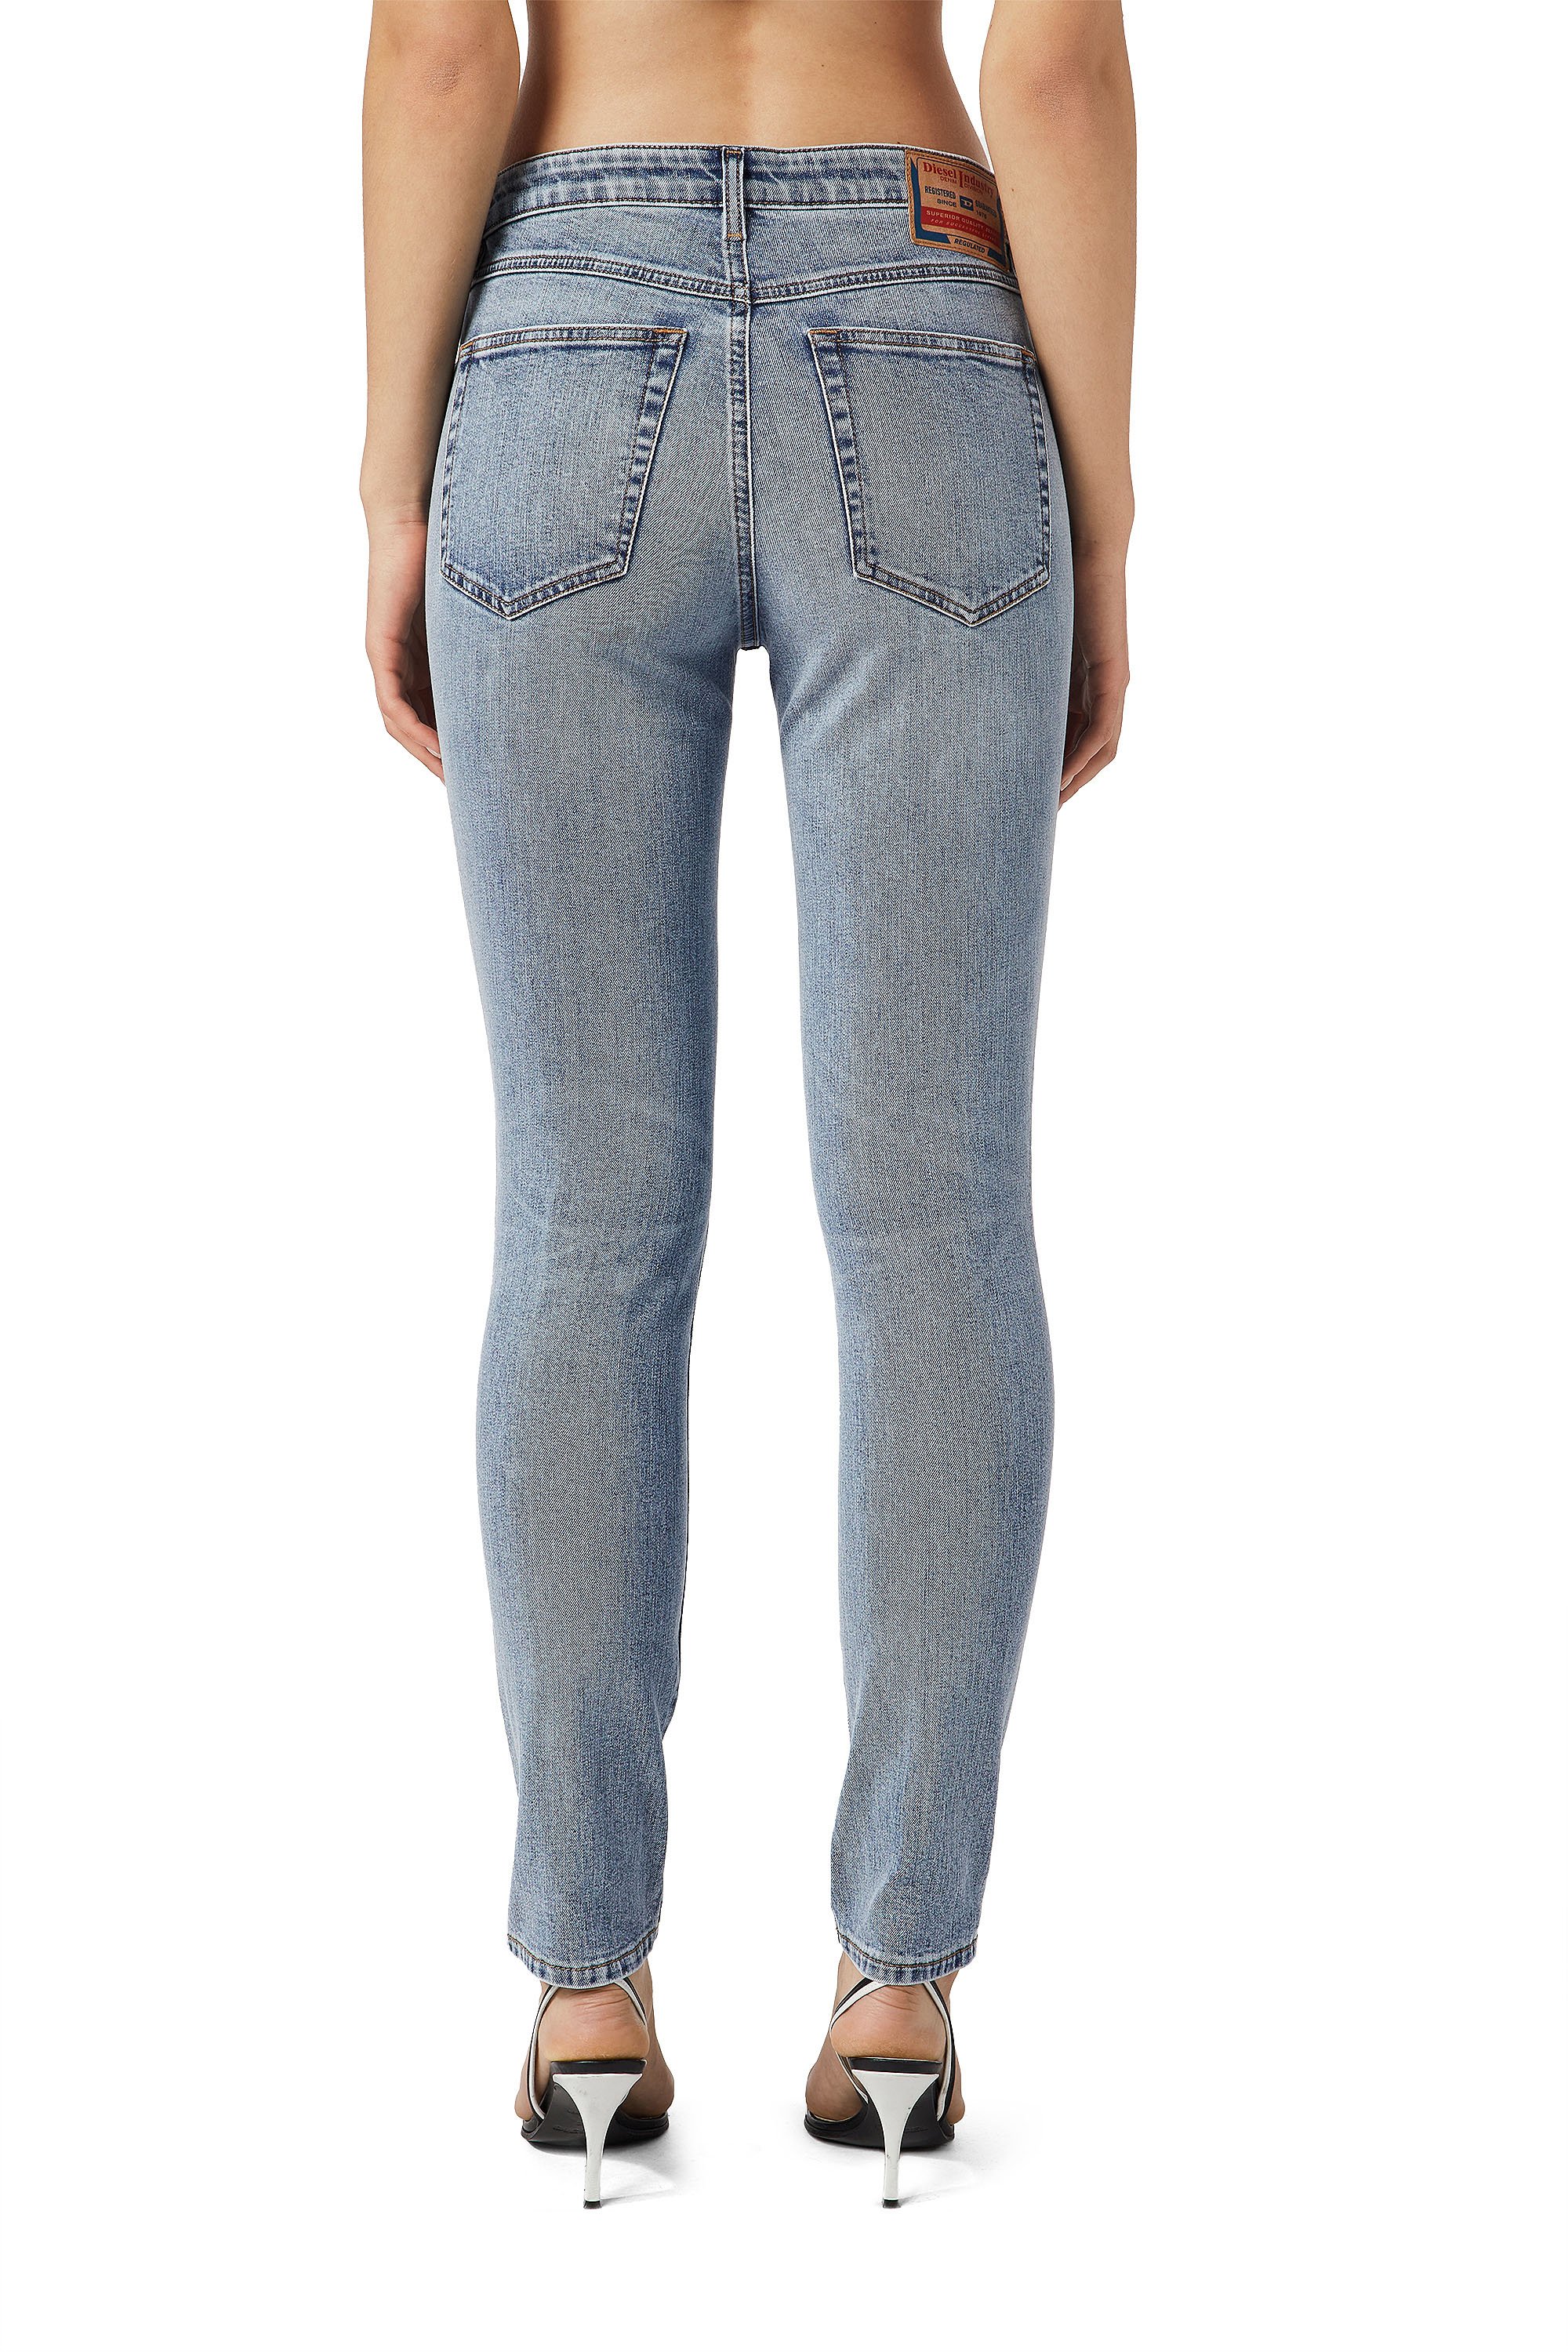 Women's Super Skinny Jeans: Slandy, Slandy-High | Diesel